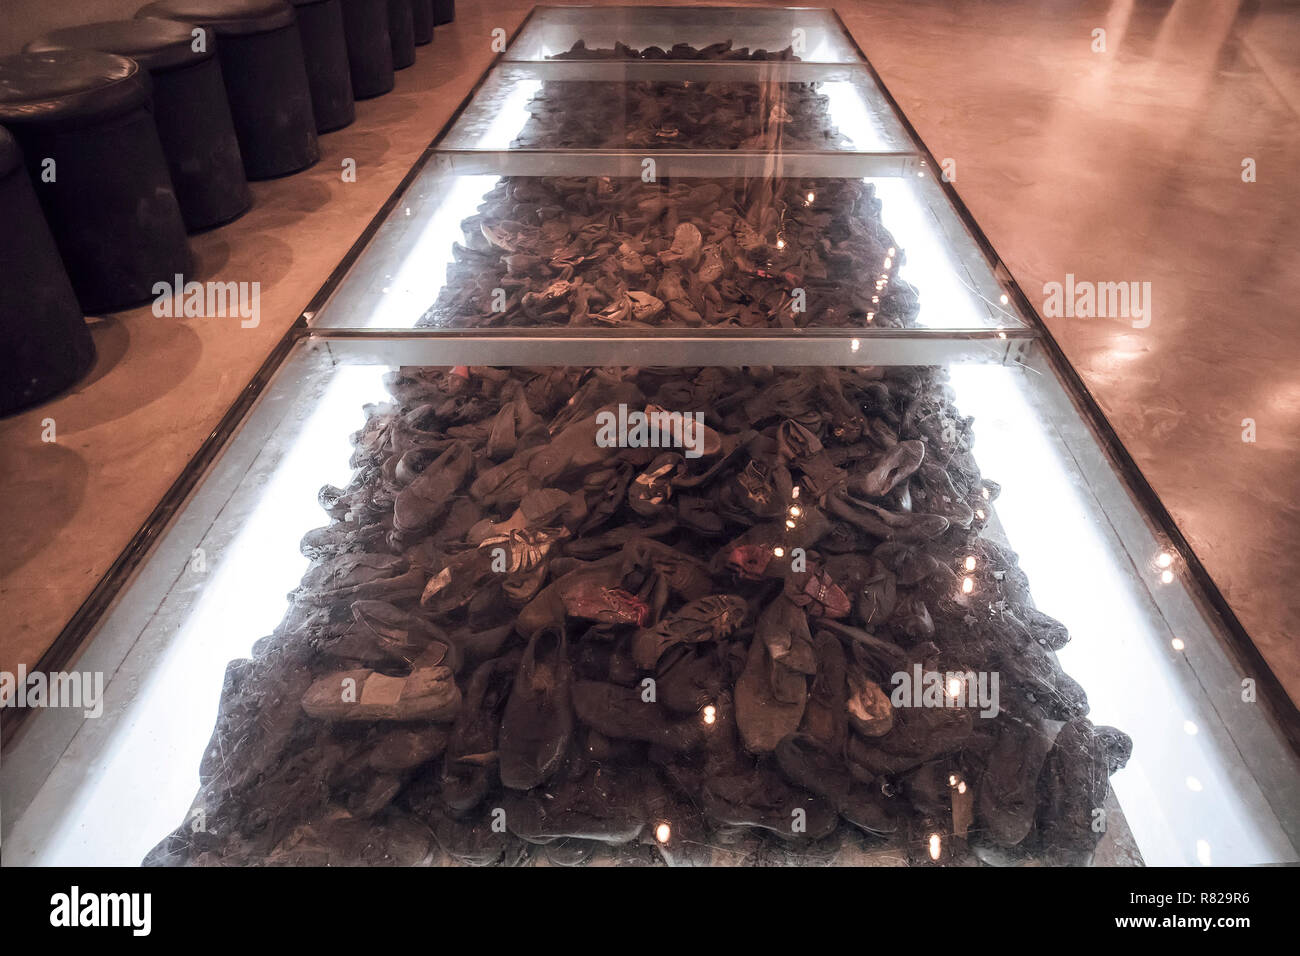 La Sala dei nomi nel Mausoleo di Yad Vashem - il memoriale dell'Olocausto Sito in Gerusalemme, Israele, alcuni scarpa rimane di circa 6 milioni di ebrei uccisi durante la Guerra Mondiale ll Foto Stock